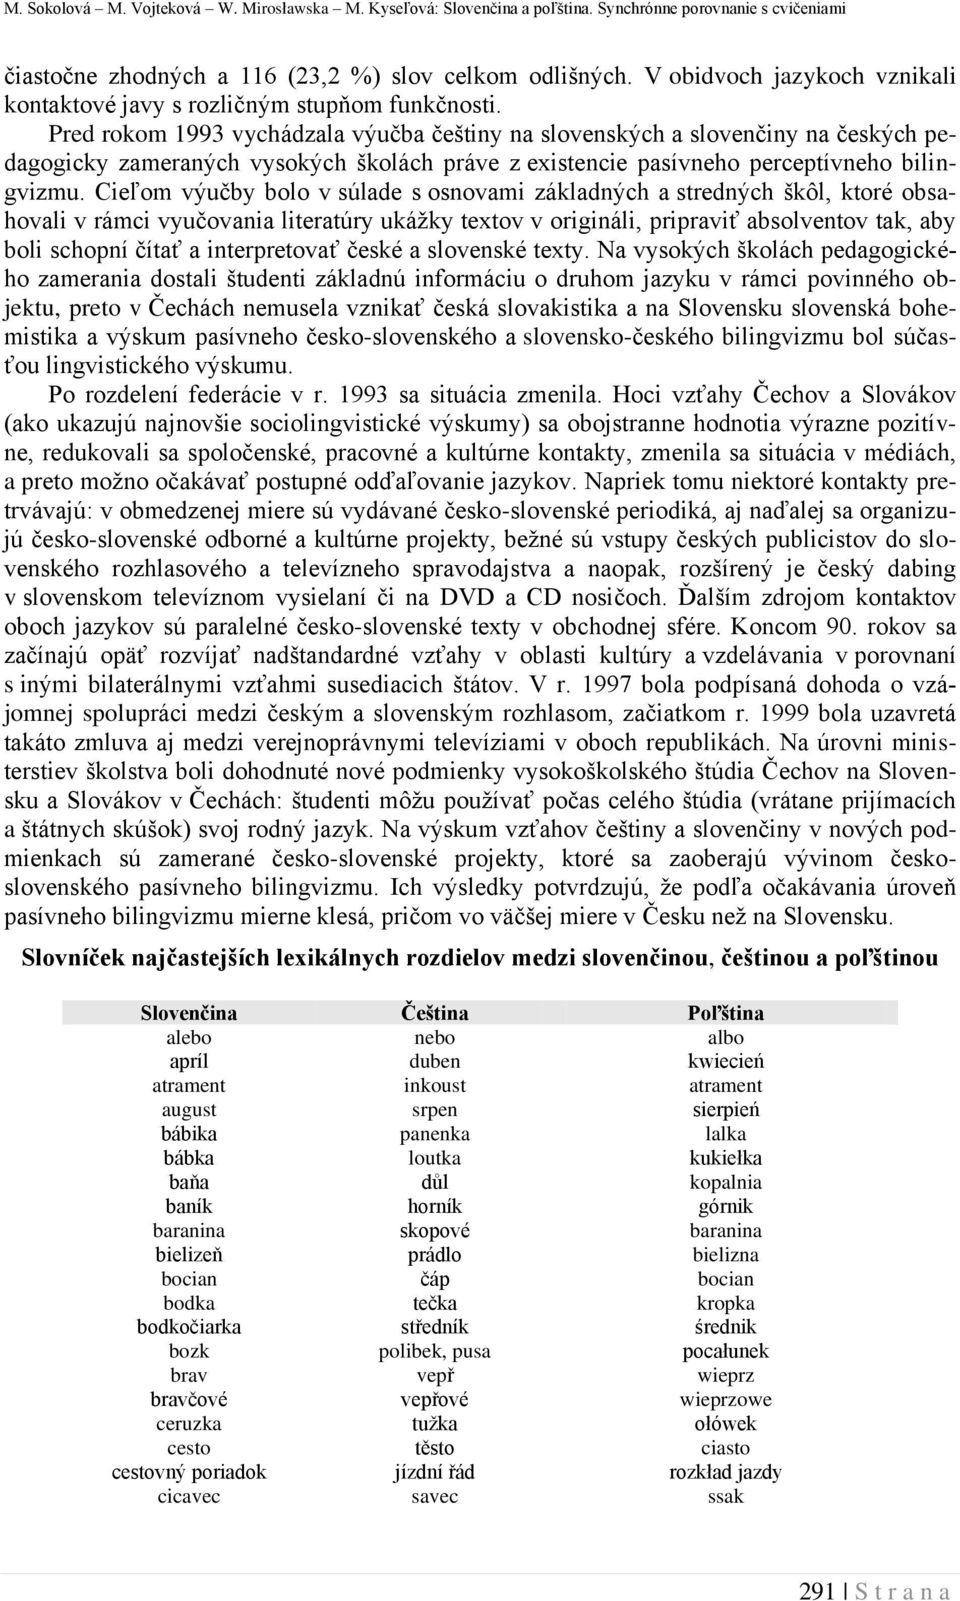 Pred rokom 1993 vychádzala výučba češtiny na slovenských a slovenčiny na českých pedagogicky zameraných vysokých školách práve z existencie pasívneho perceptívneho bilingvizmu.